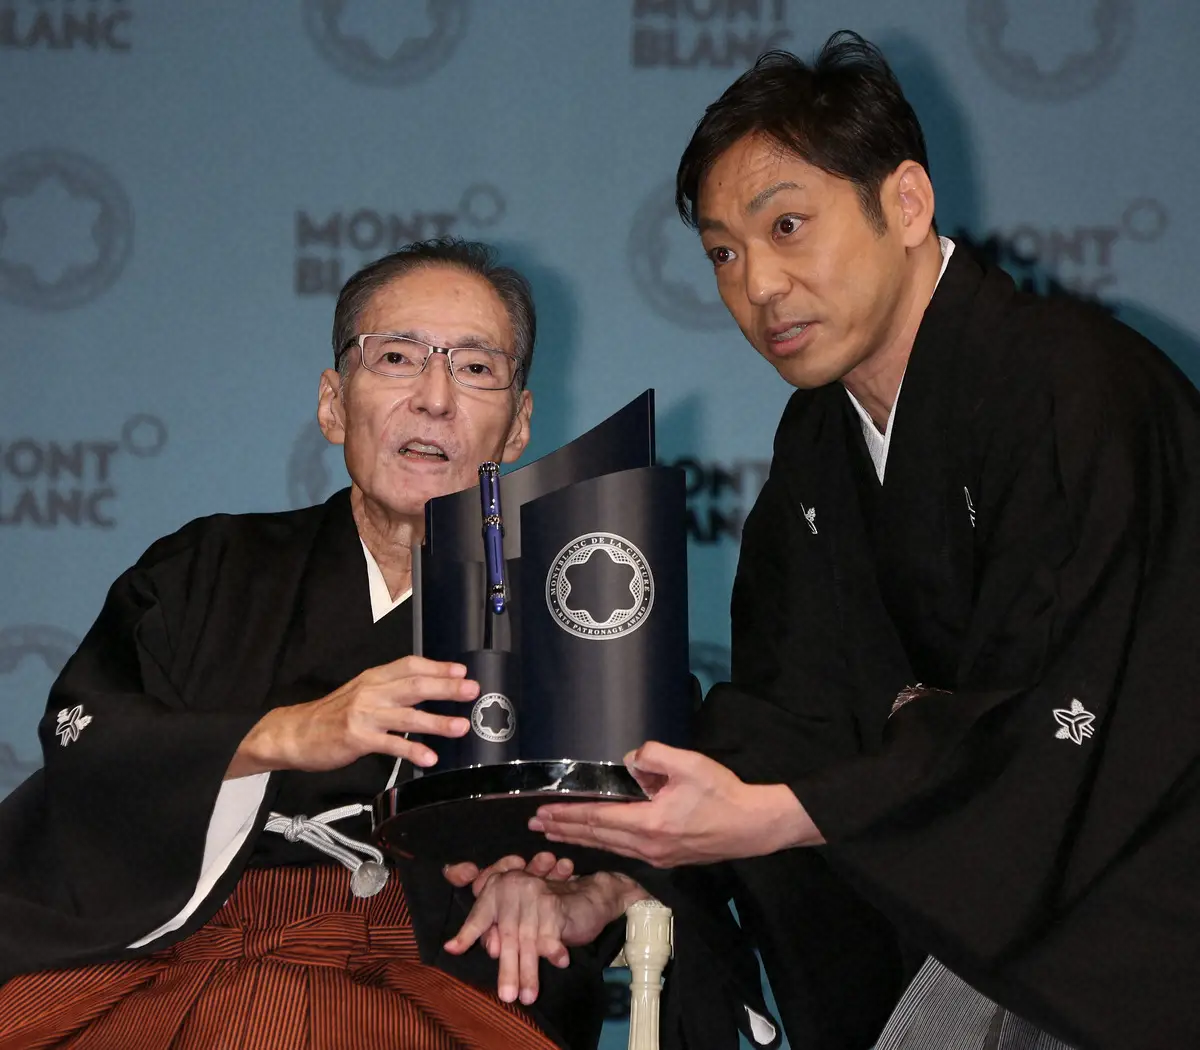 2013年、若手育成に力を注いだ人に贈られる「モンブラン国際文化賞」を受賞し、授賞式に出席する歌舞伎俳優の市川猿翁さん（左）と息子の市川中車（香川照之）